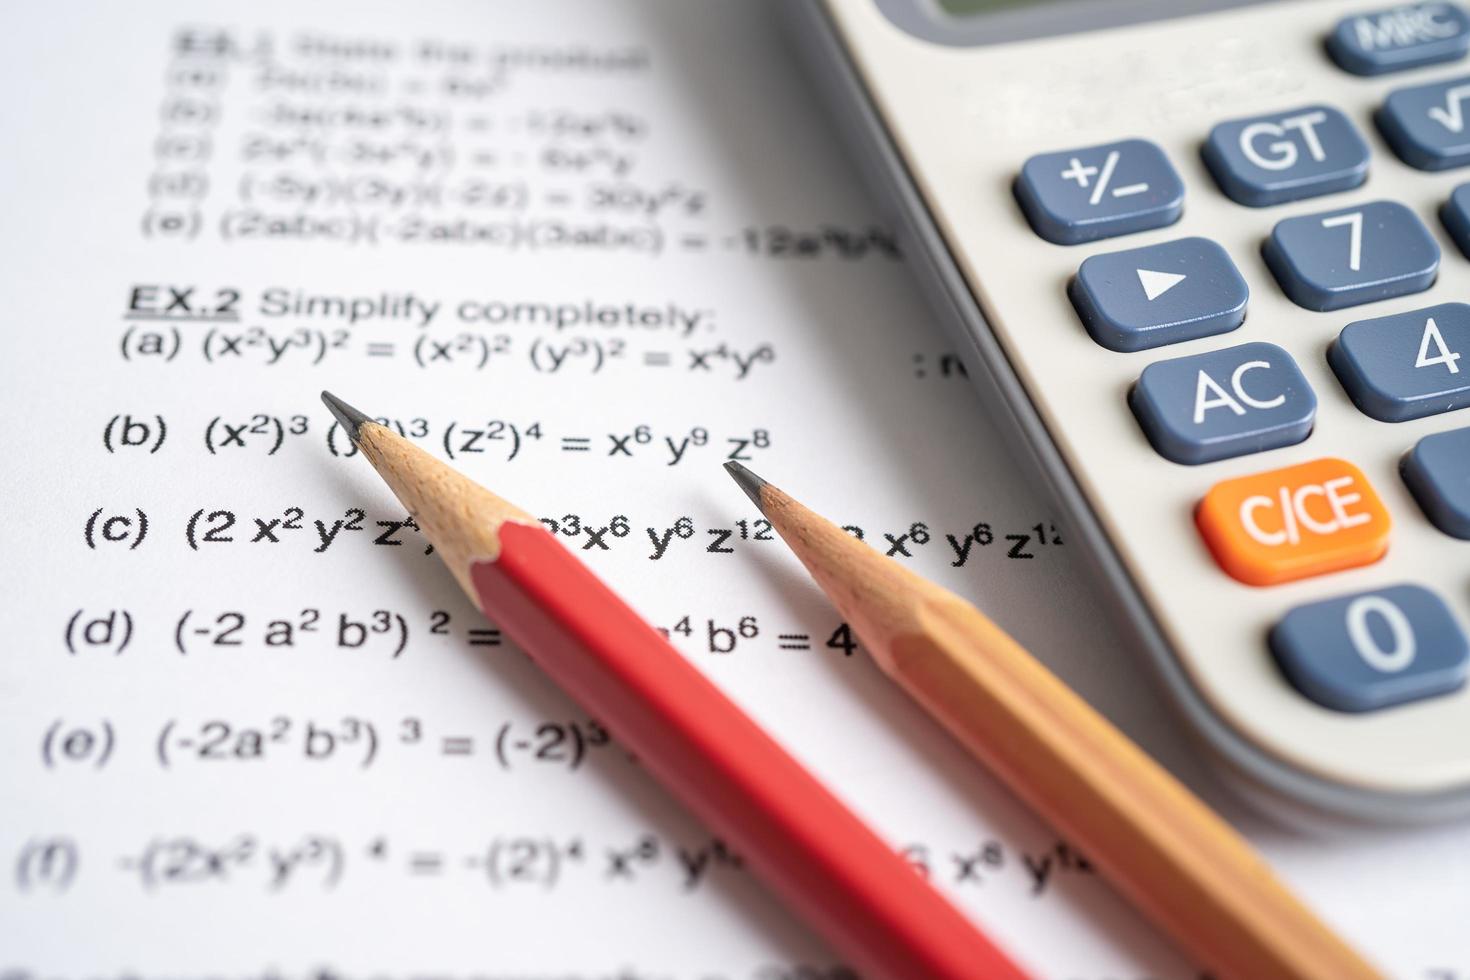 lápis e calculadora no papel de teste de exercício de fórmula matemática na escola de educação. foto